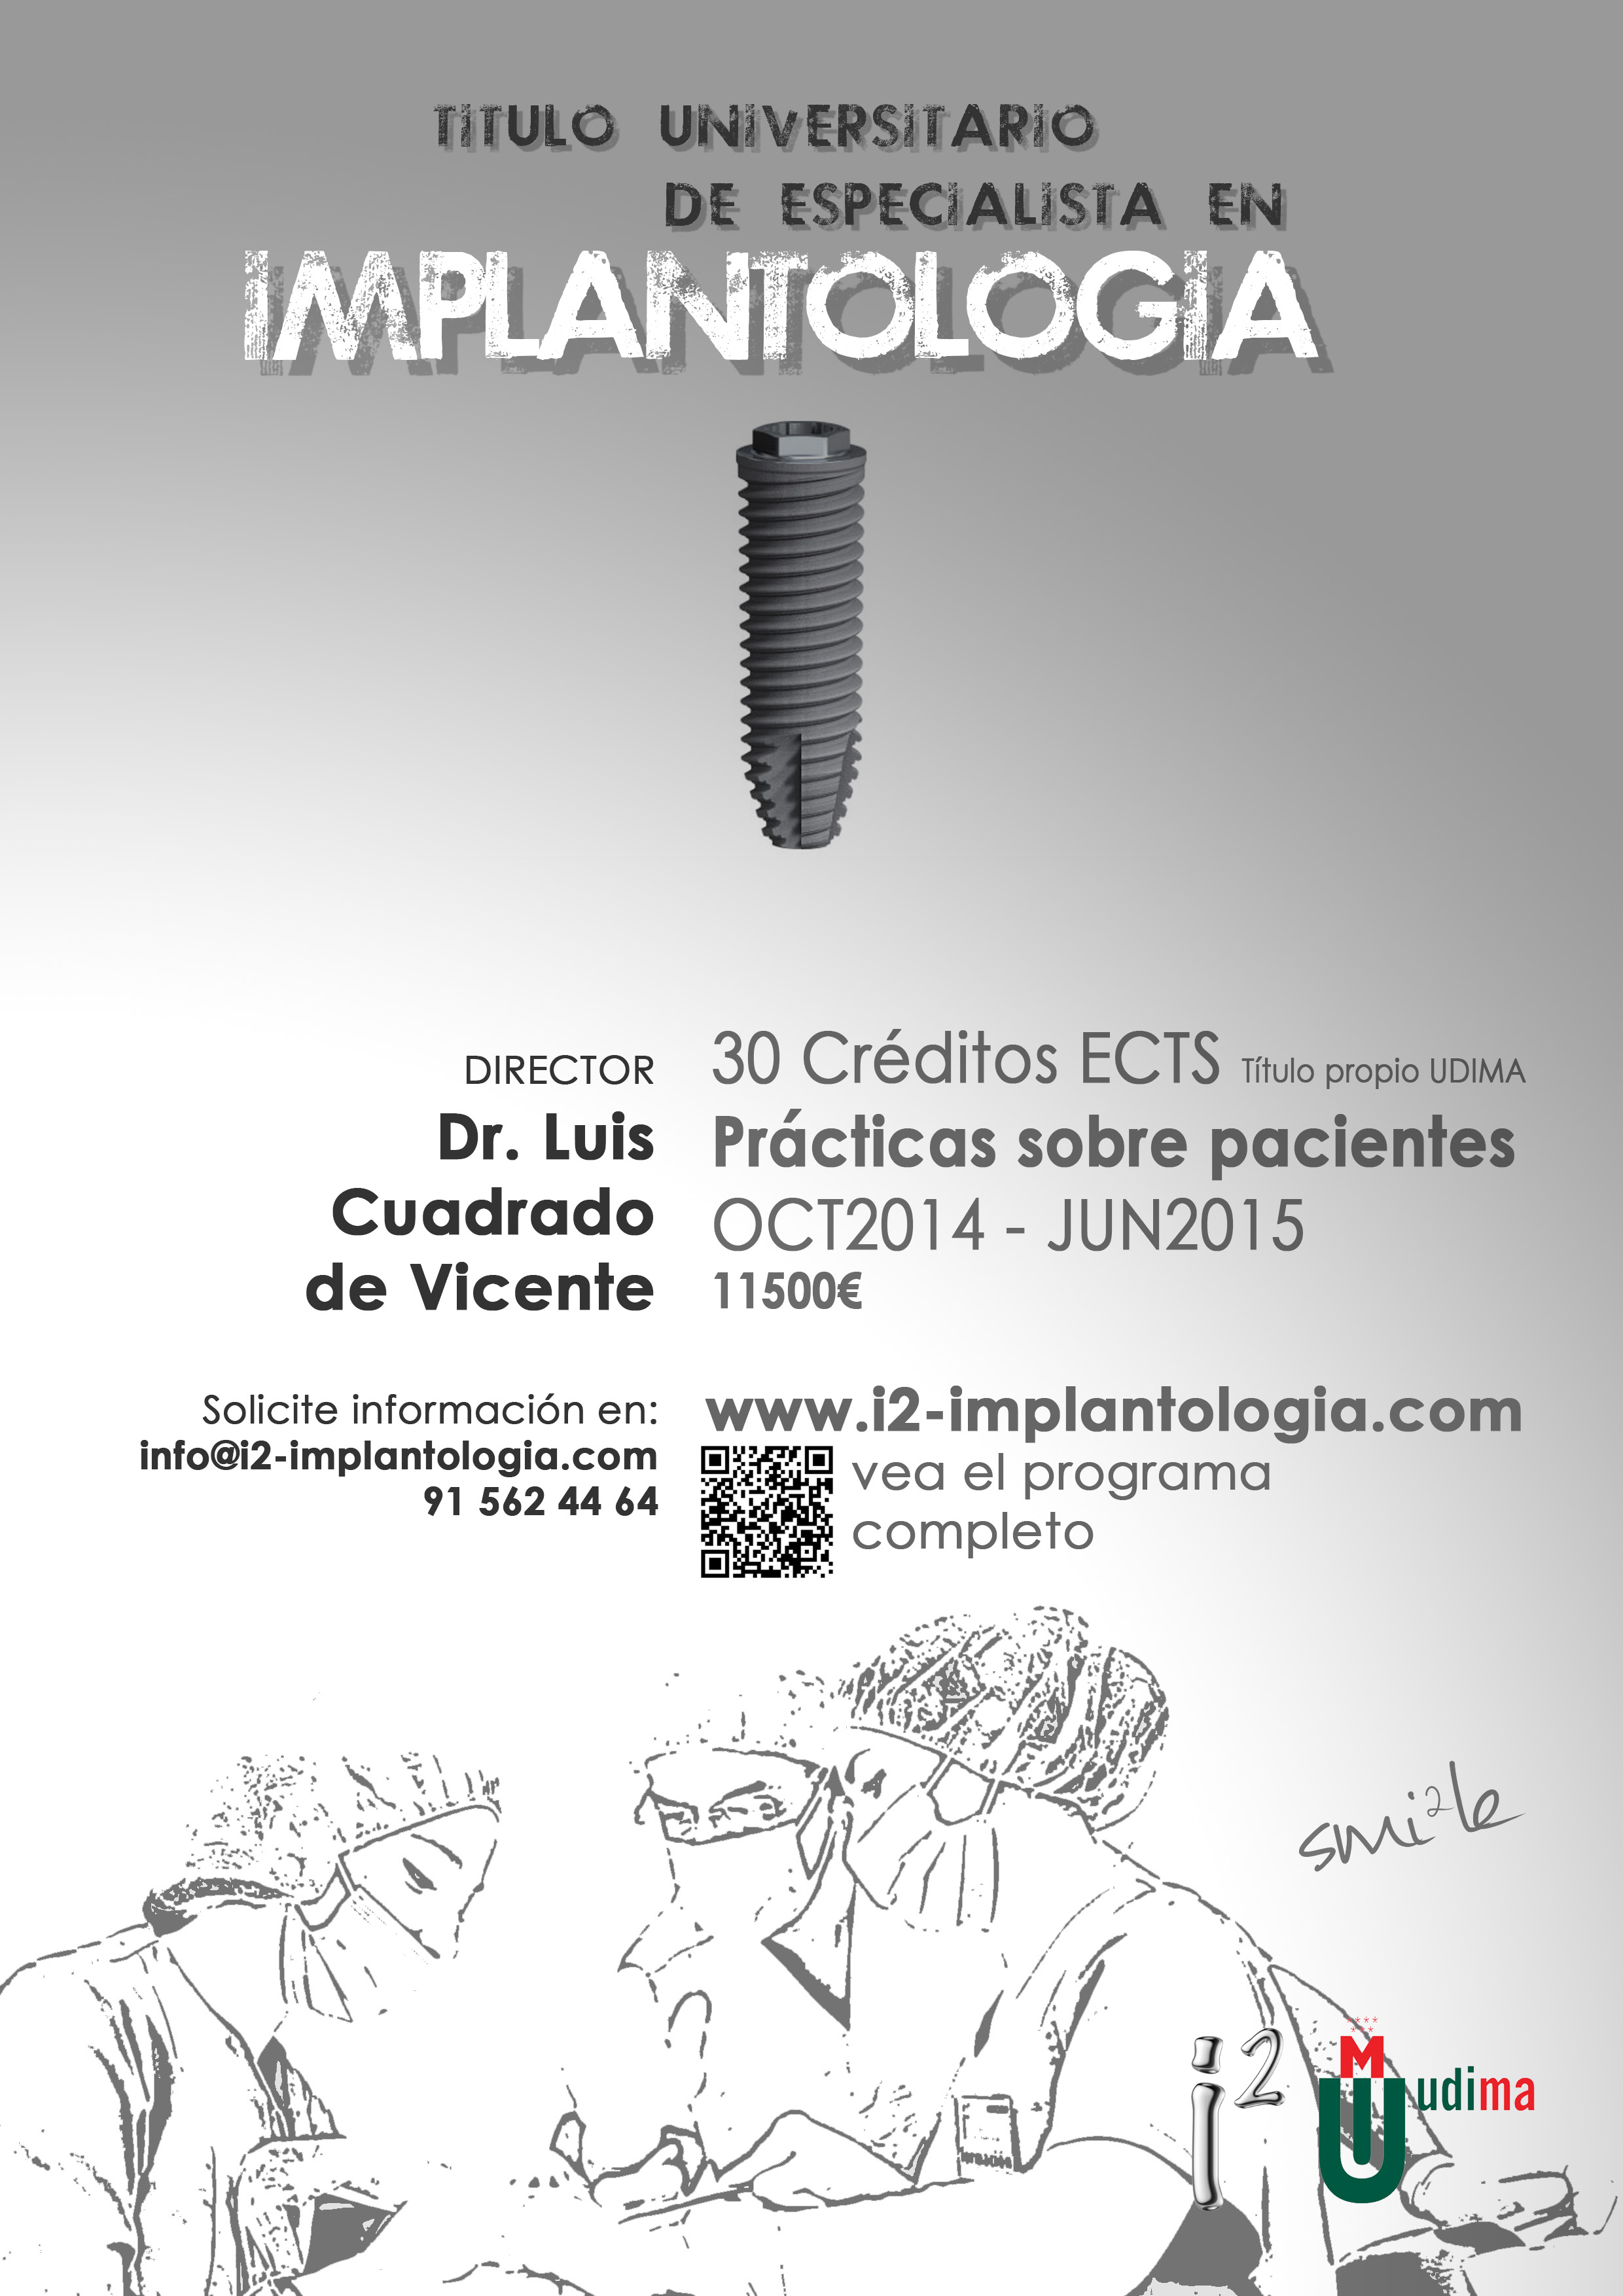 Título Universitario Experto en Implantología I2 - UDIMA 2014-2015